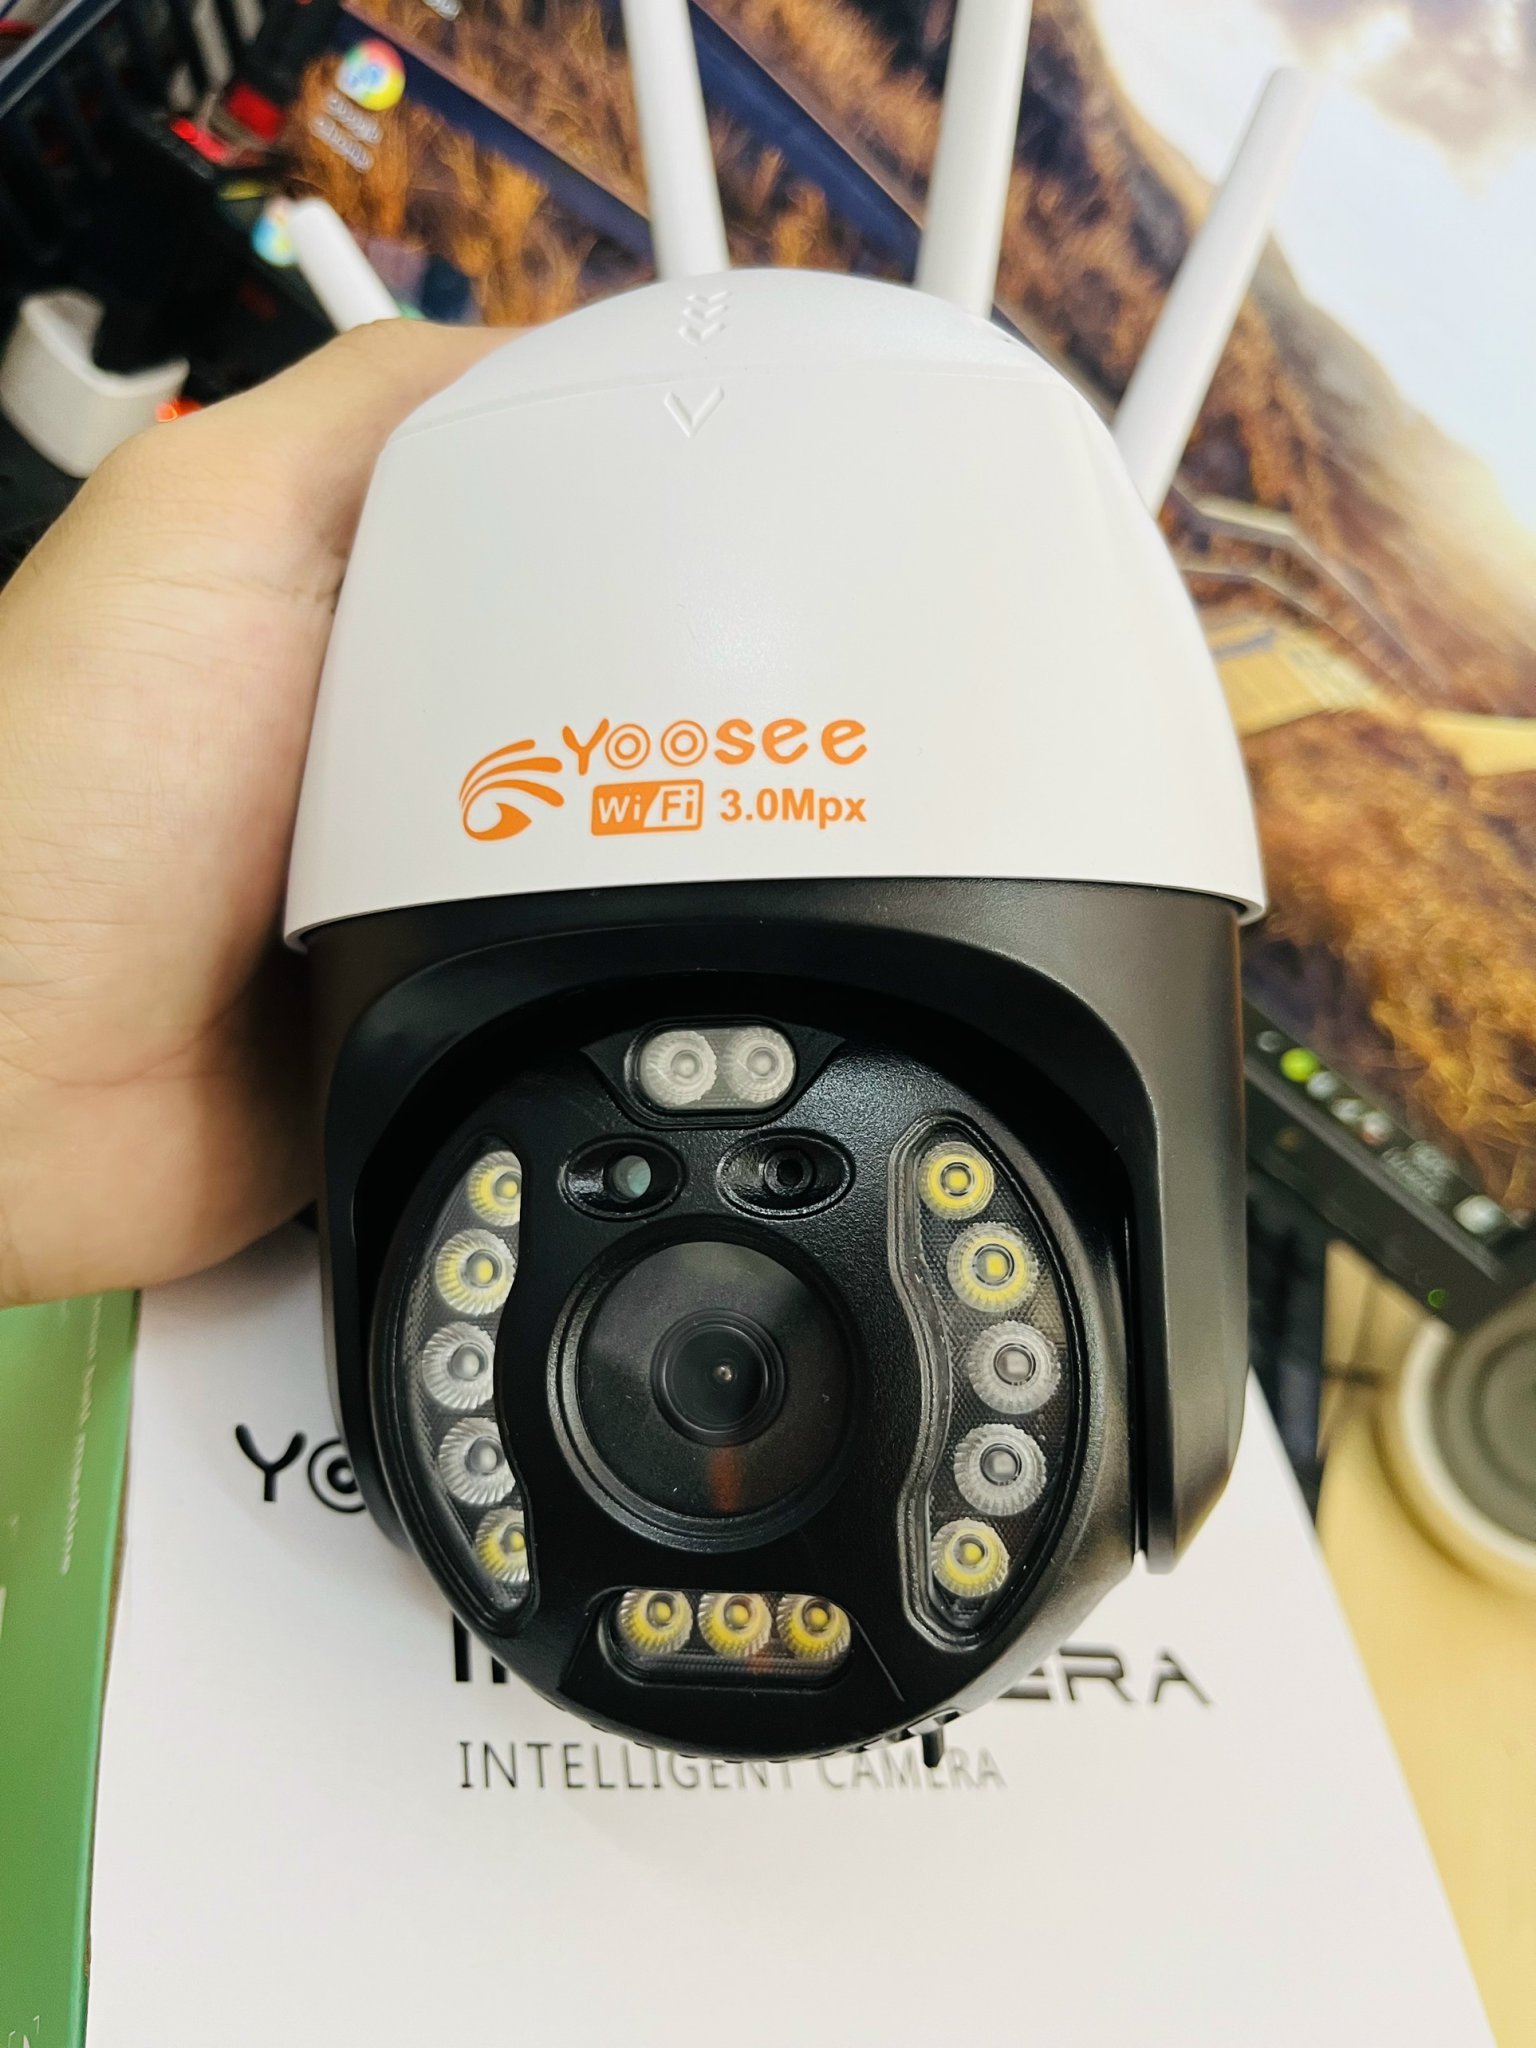 Camera Wifi Yoosee Chuẩn 3.0 Mpx Full HD Trong nhà Ngoài Trời Xoay 355° 4 râu Xem Đêm Có Màu-Đàm Thoại 2 Chiều-Phát Hiện Chuyển Động - Hàng Nhập Khẩu